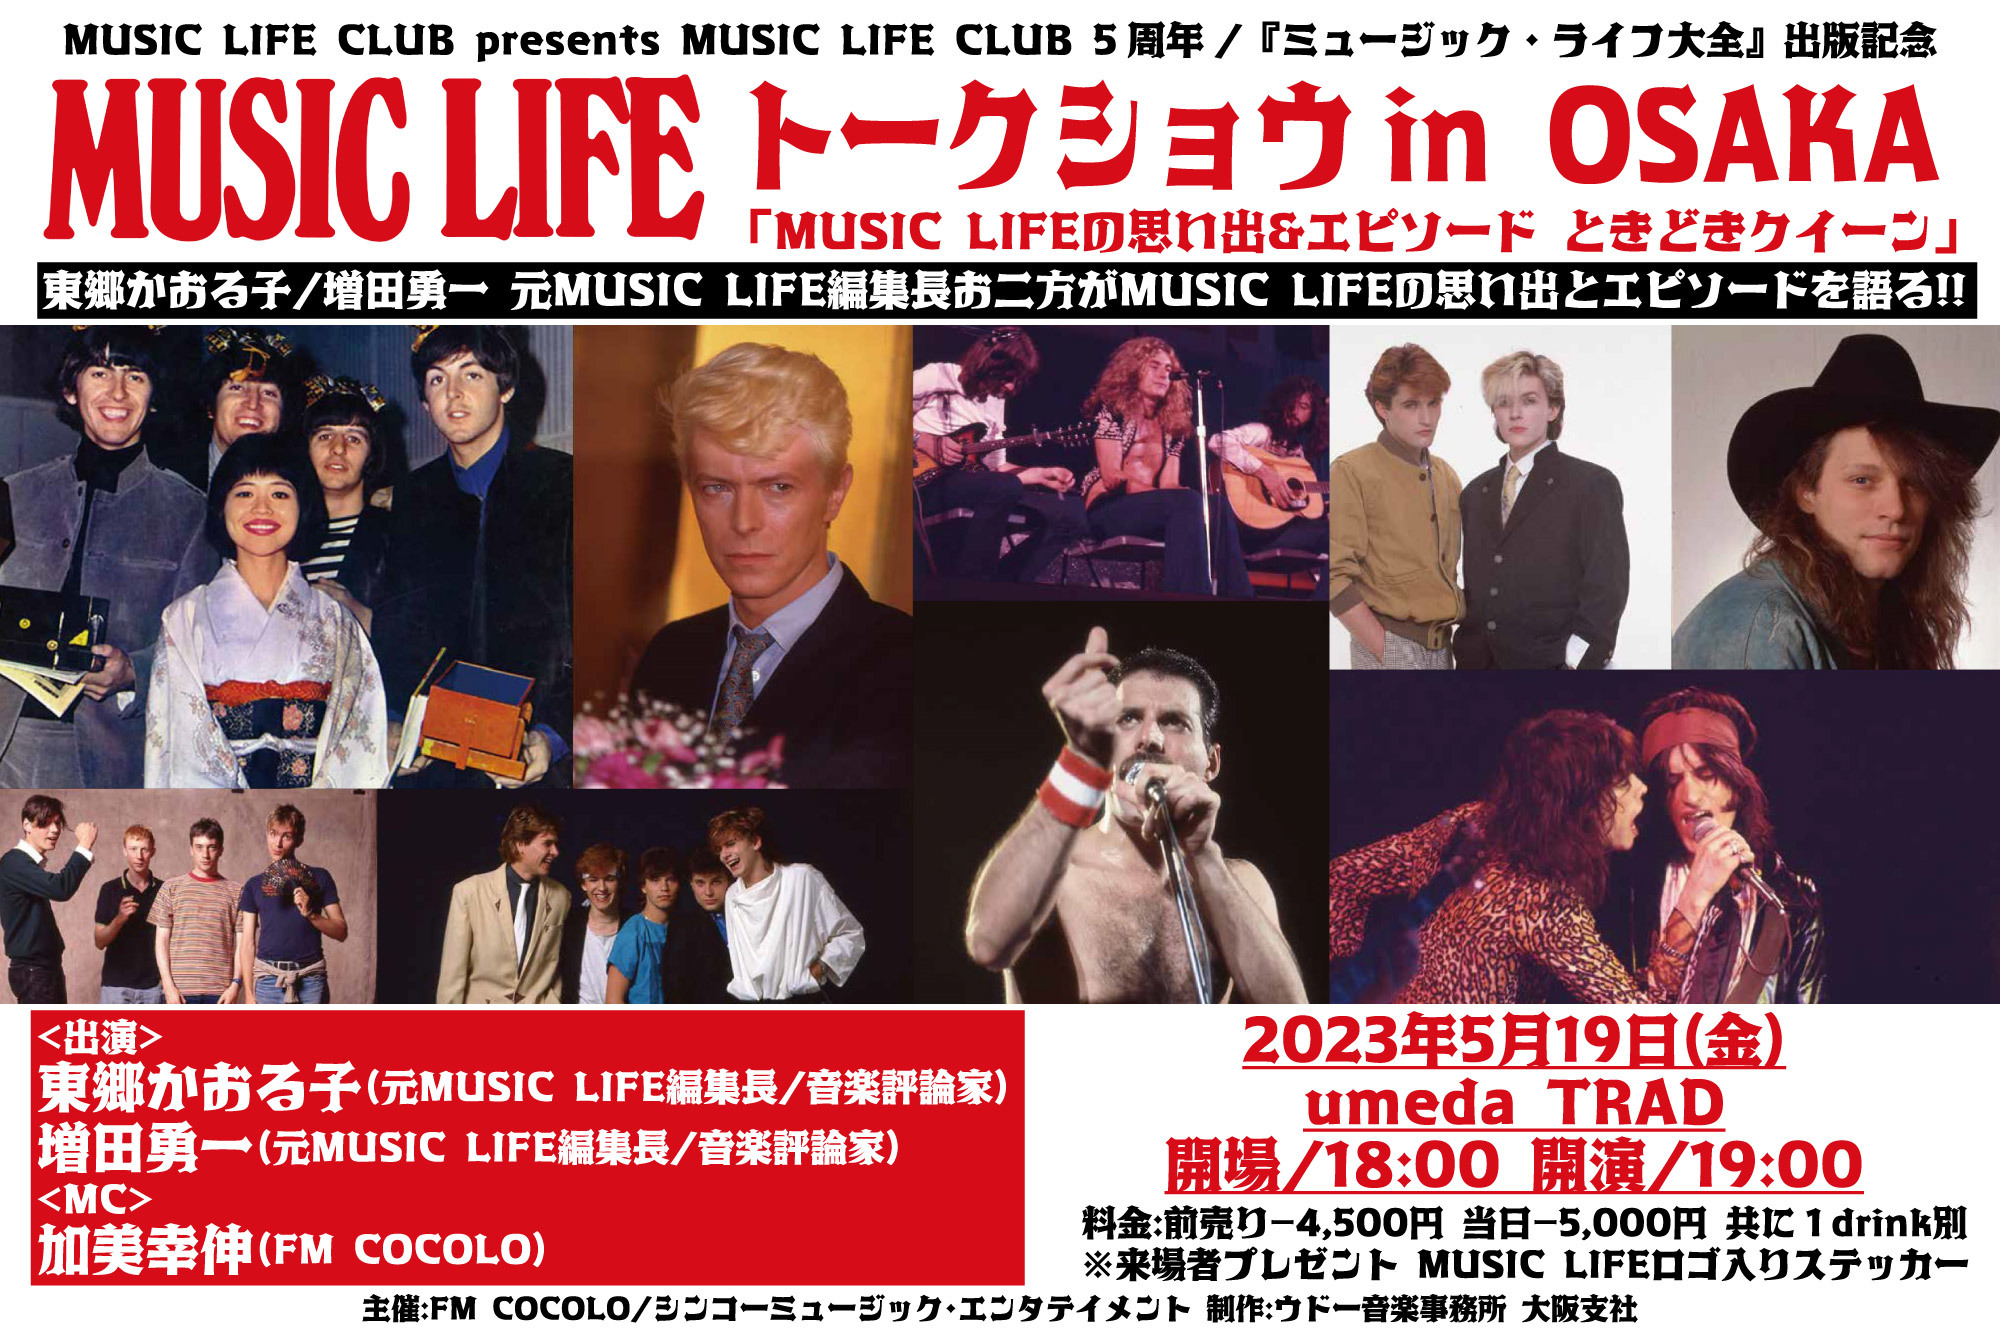 雑誌『MUSIC LIFE』の集大成出版とwebサイト「MUSIC LIFE CLUB」5周年